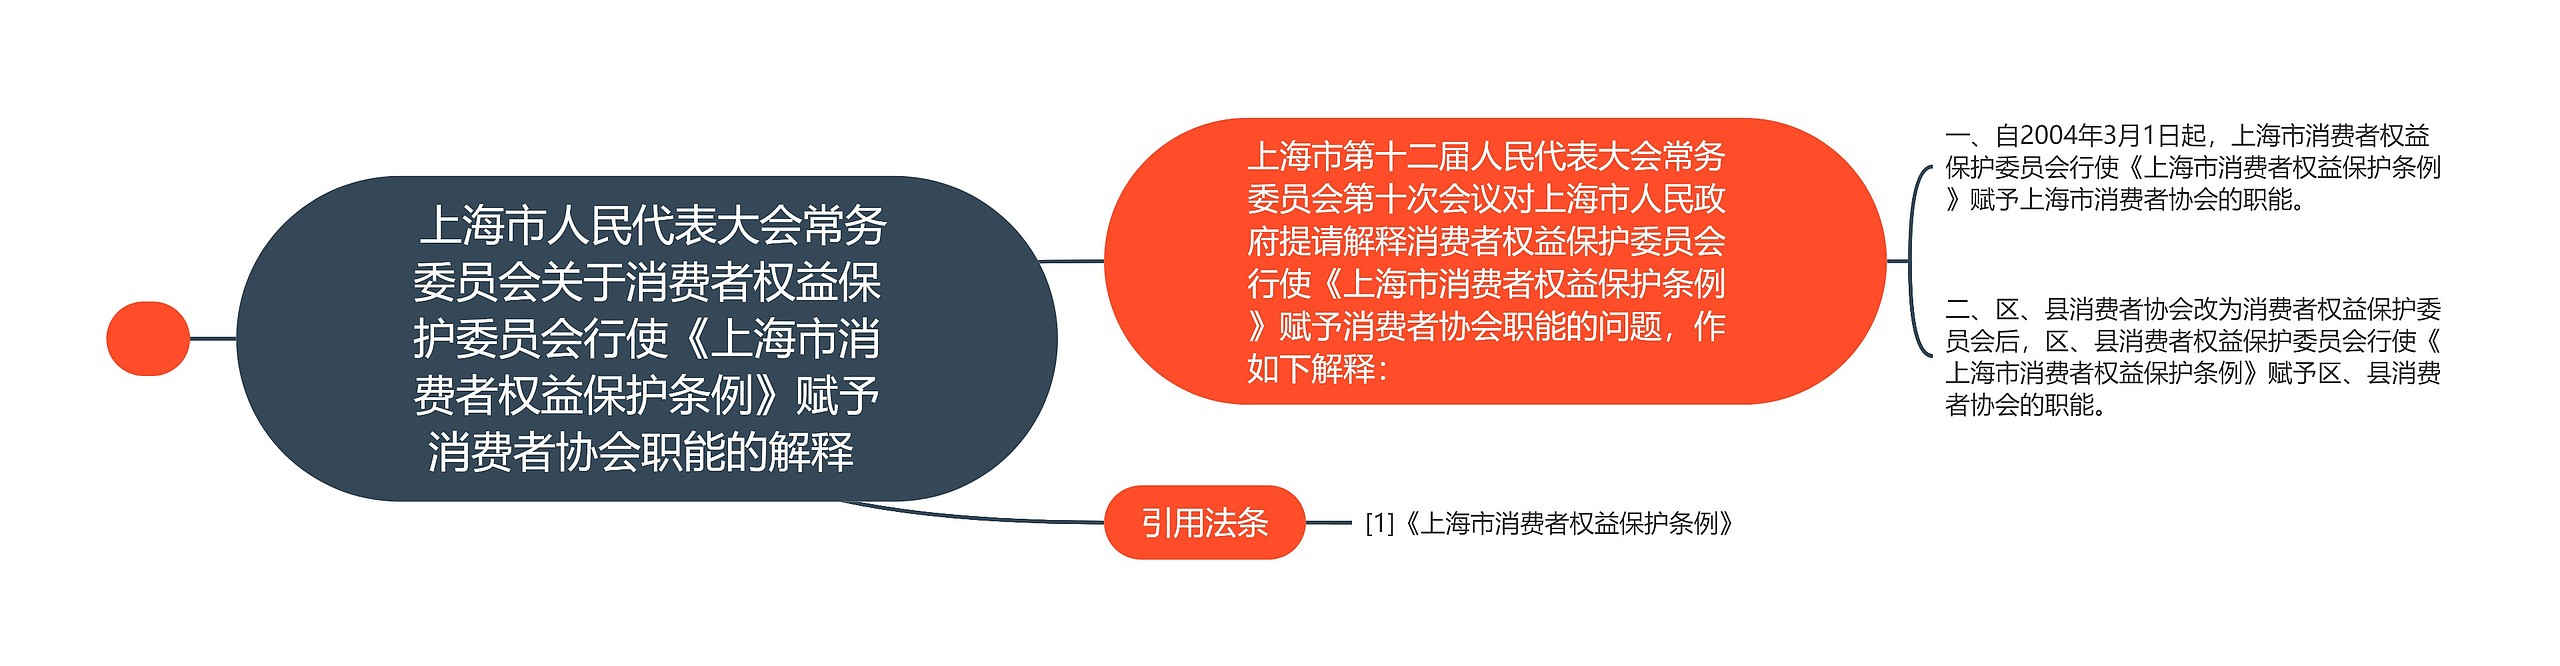  上海市人民代表大会常务委员会关于消费者权益保护委员会行使《上海市消费者权益保护条例》赋予消费者协会职能的解释 思维导图